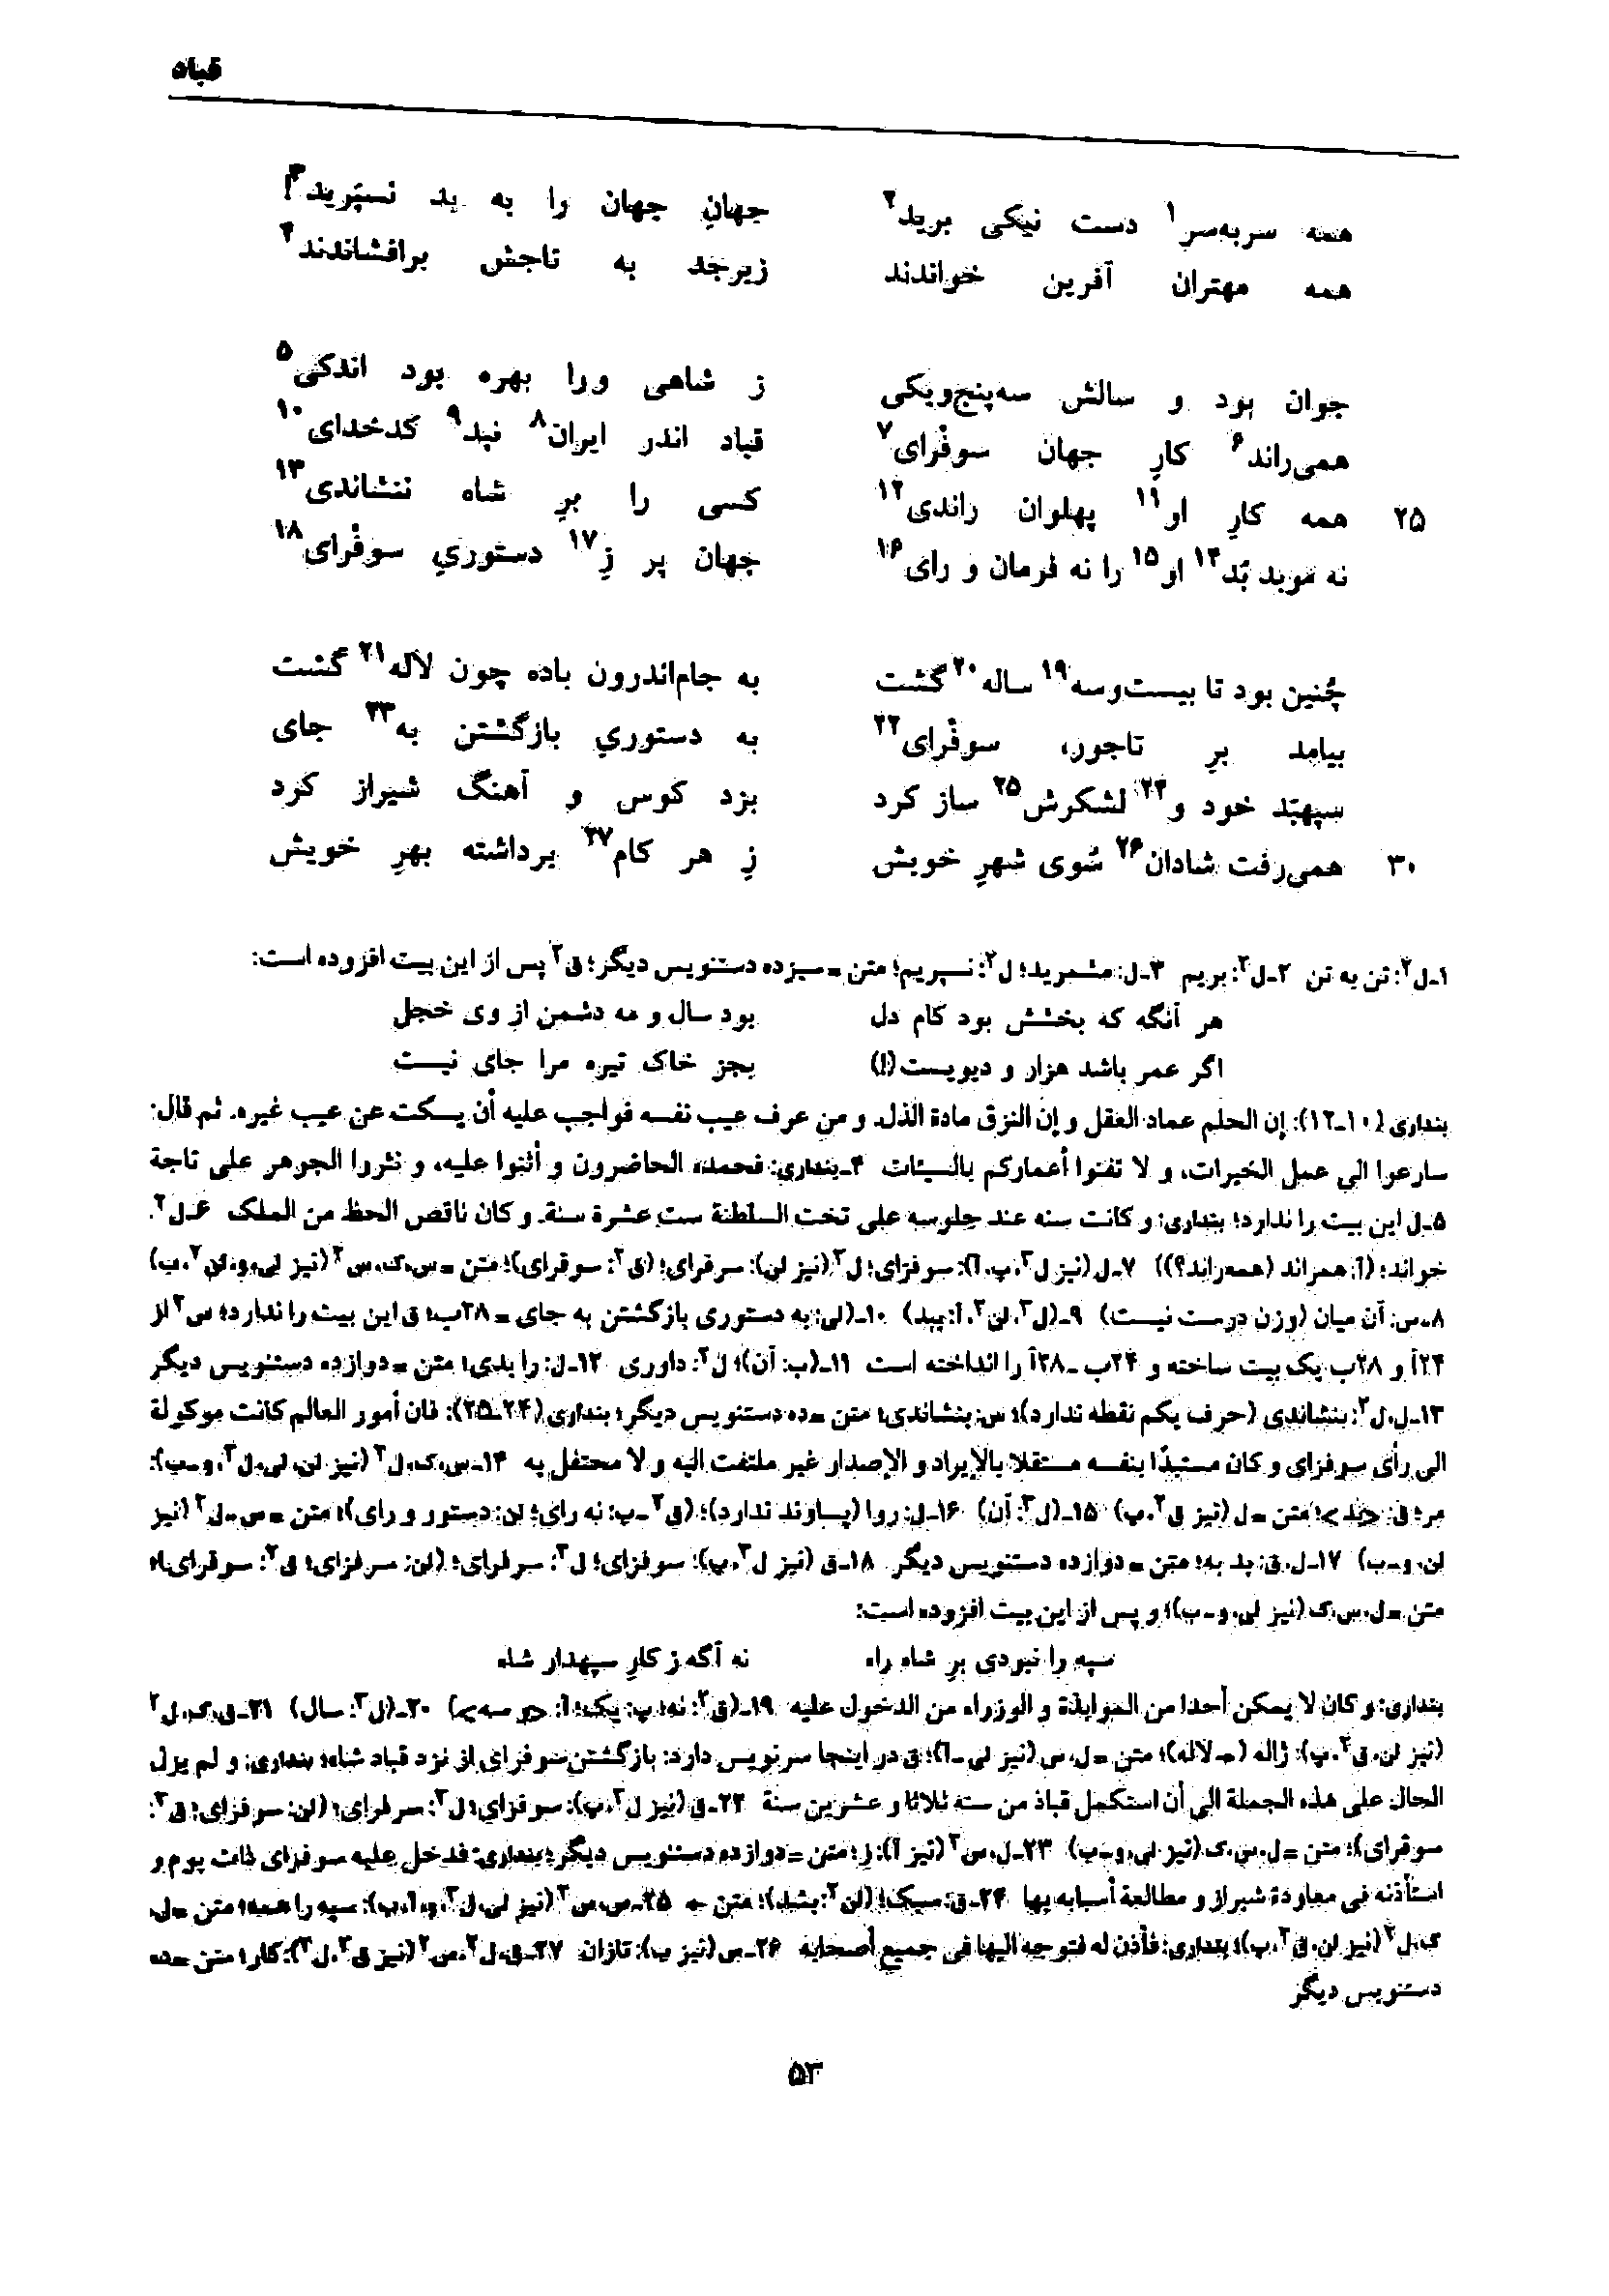 vol. 7, p. 53